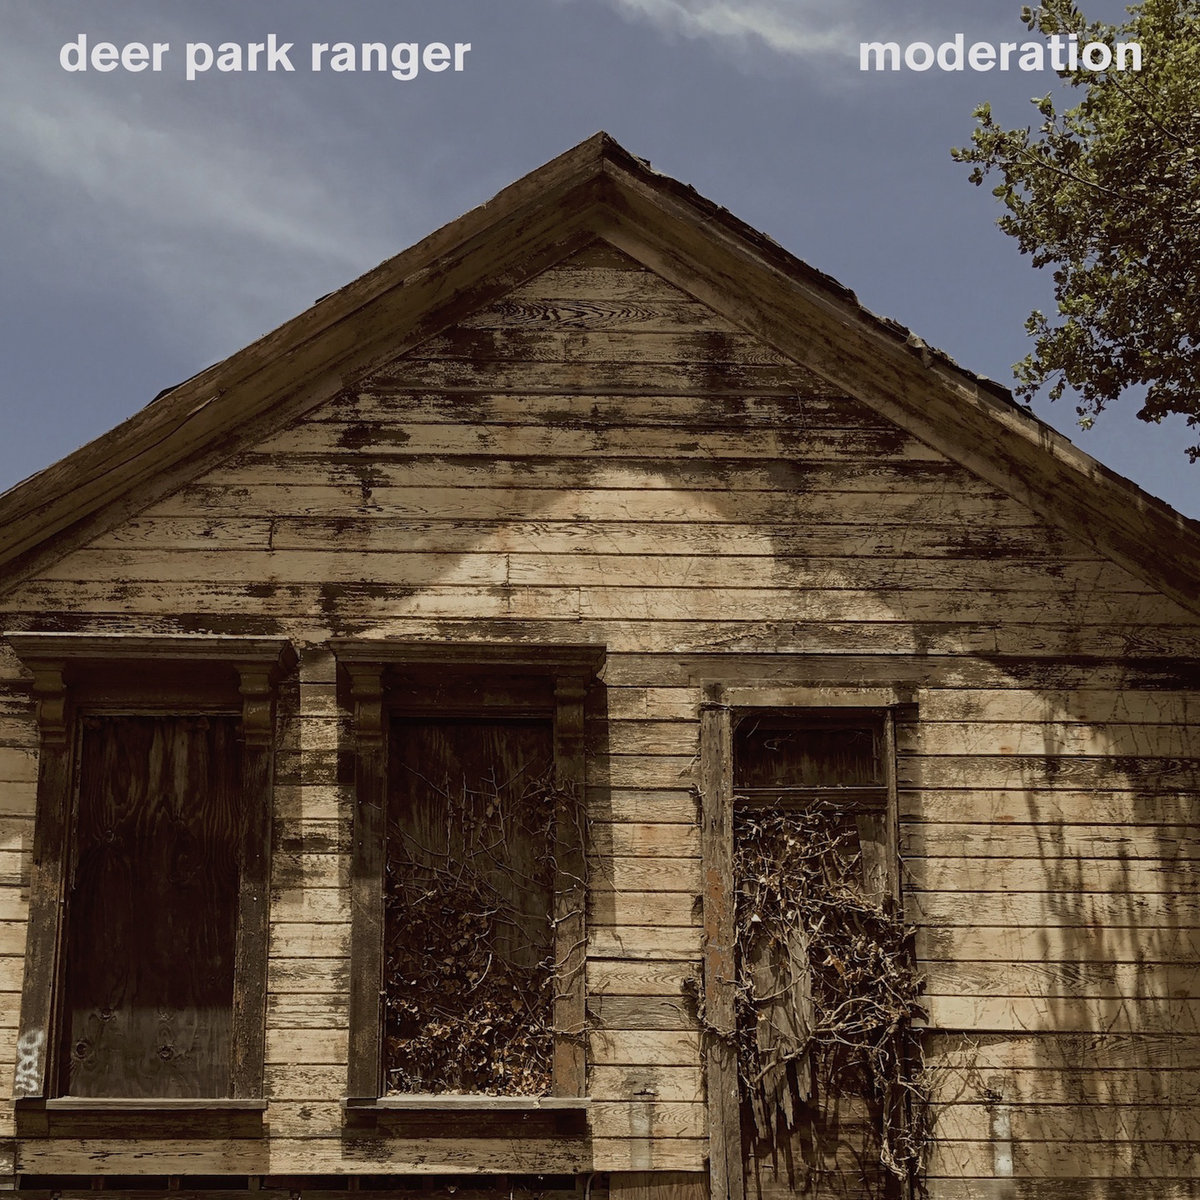 Deer Park Ranger – Moderation